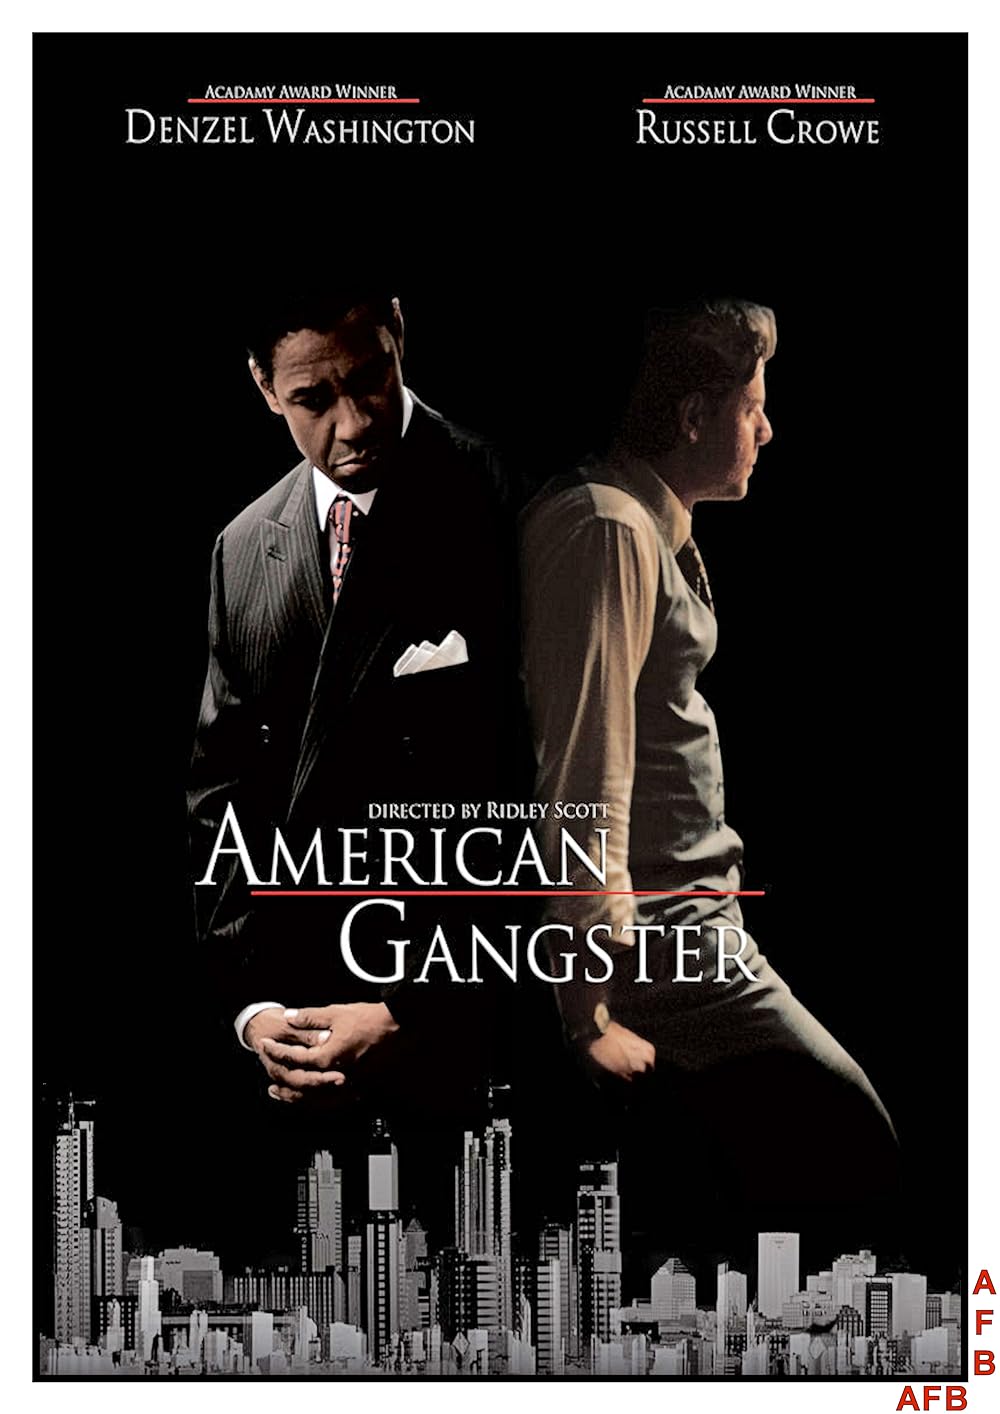 American Gangster (2007) Theatrical Cut 224Kbps 23.976Fps 48Khz 2.0Ch DD+ AMZN E-AC3 Turkish Audio TAC